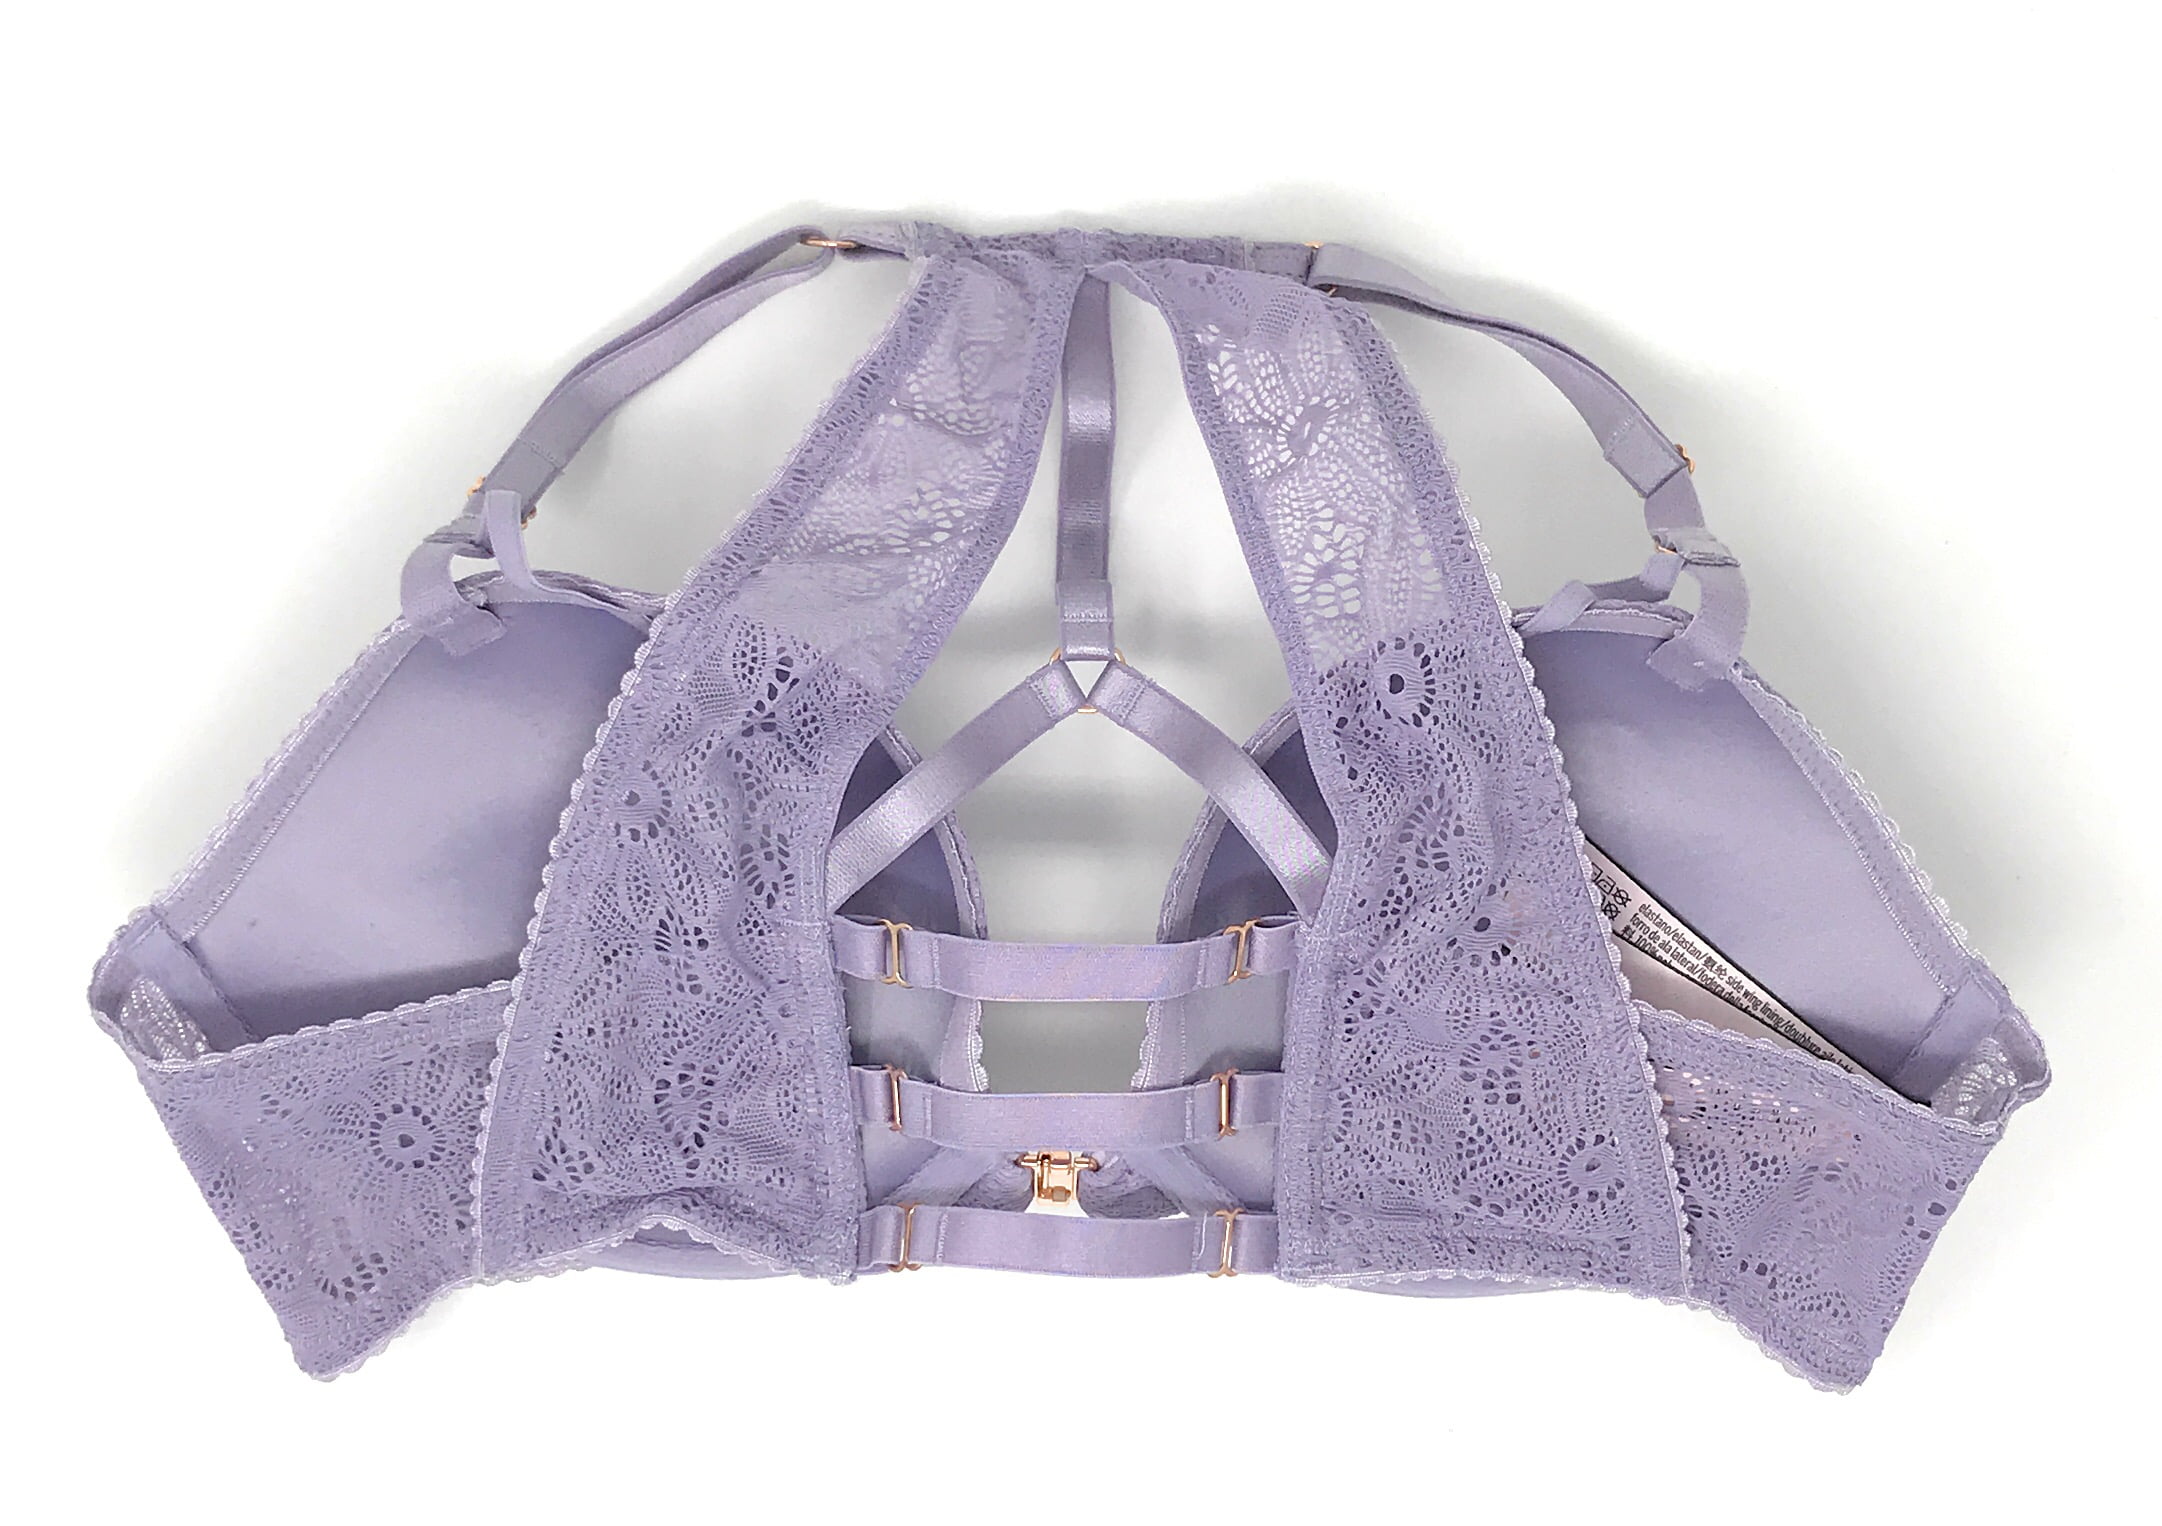 Victoria's Secret Body by Victoria Mauve Perfect Shape Racerback Bra 38D  Purple Size 38 D - $15 (81% Off Retail) - From Sarah